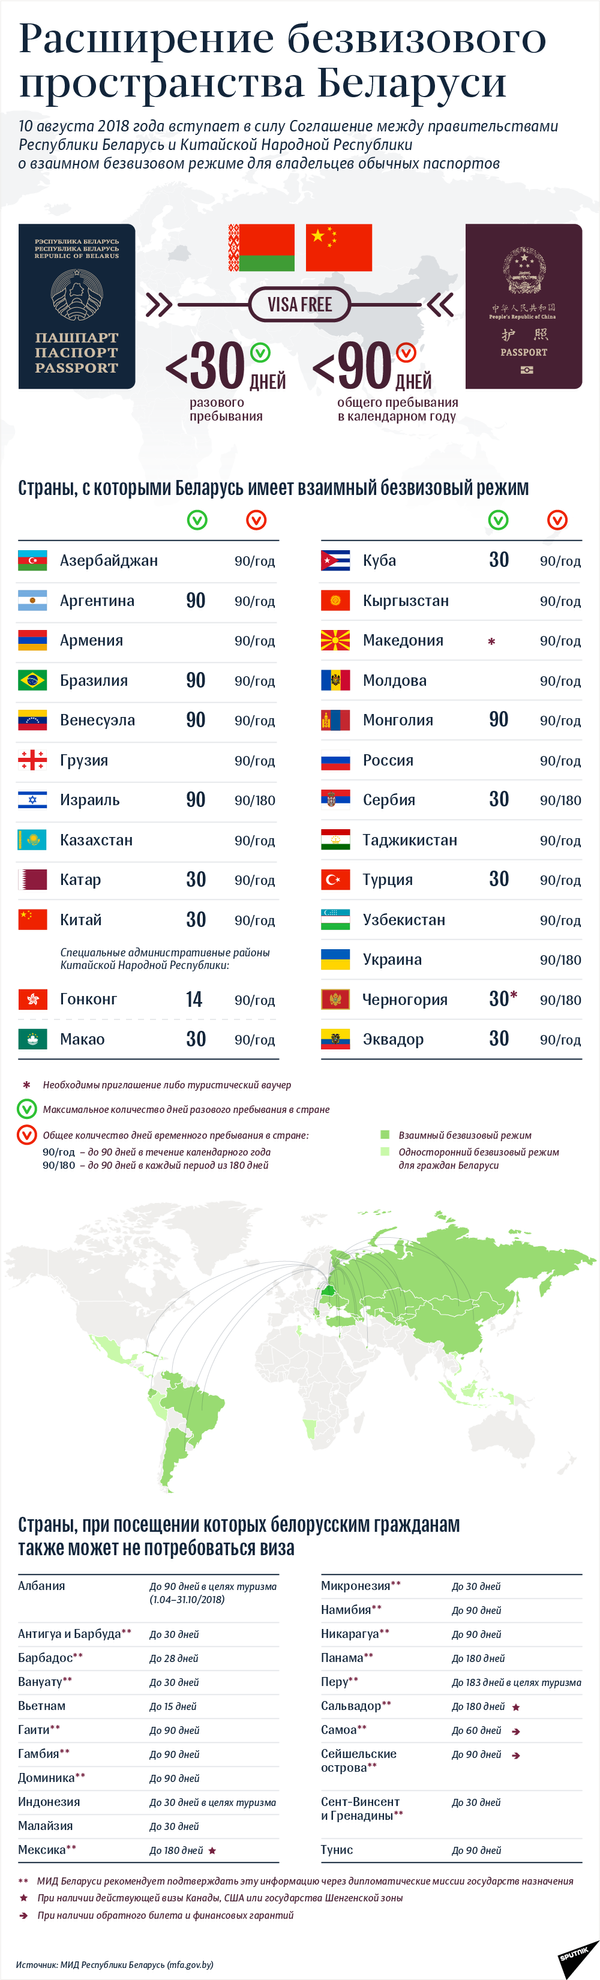 Расширение безвизового пространства Беларуси – инфографика на sputnik.by - Sputnik Беларусь